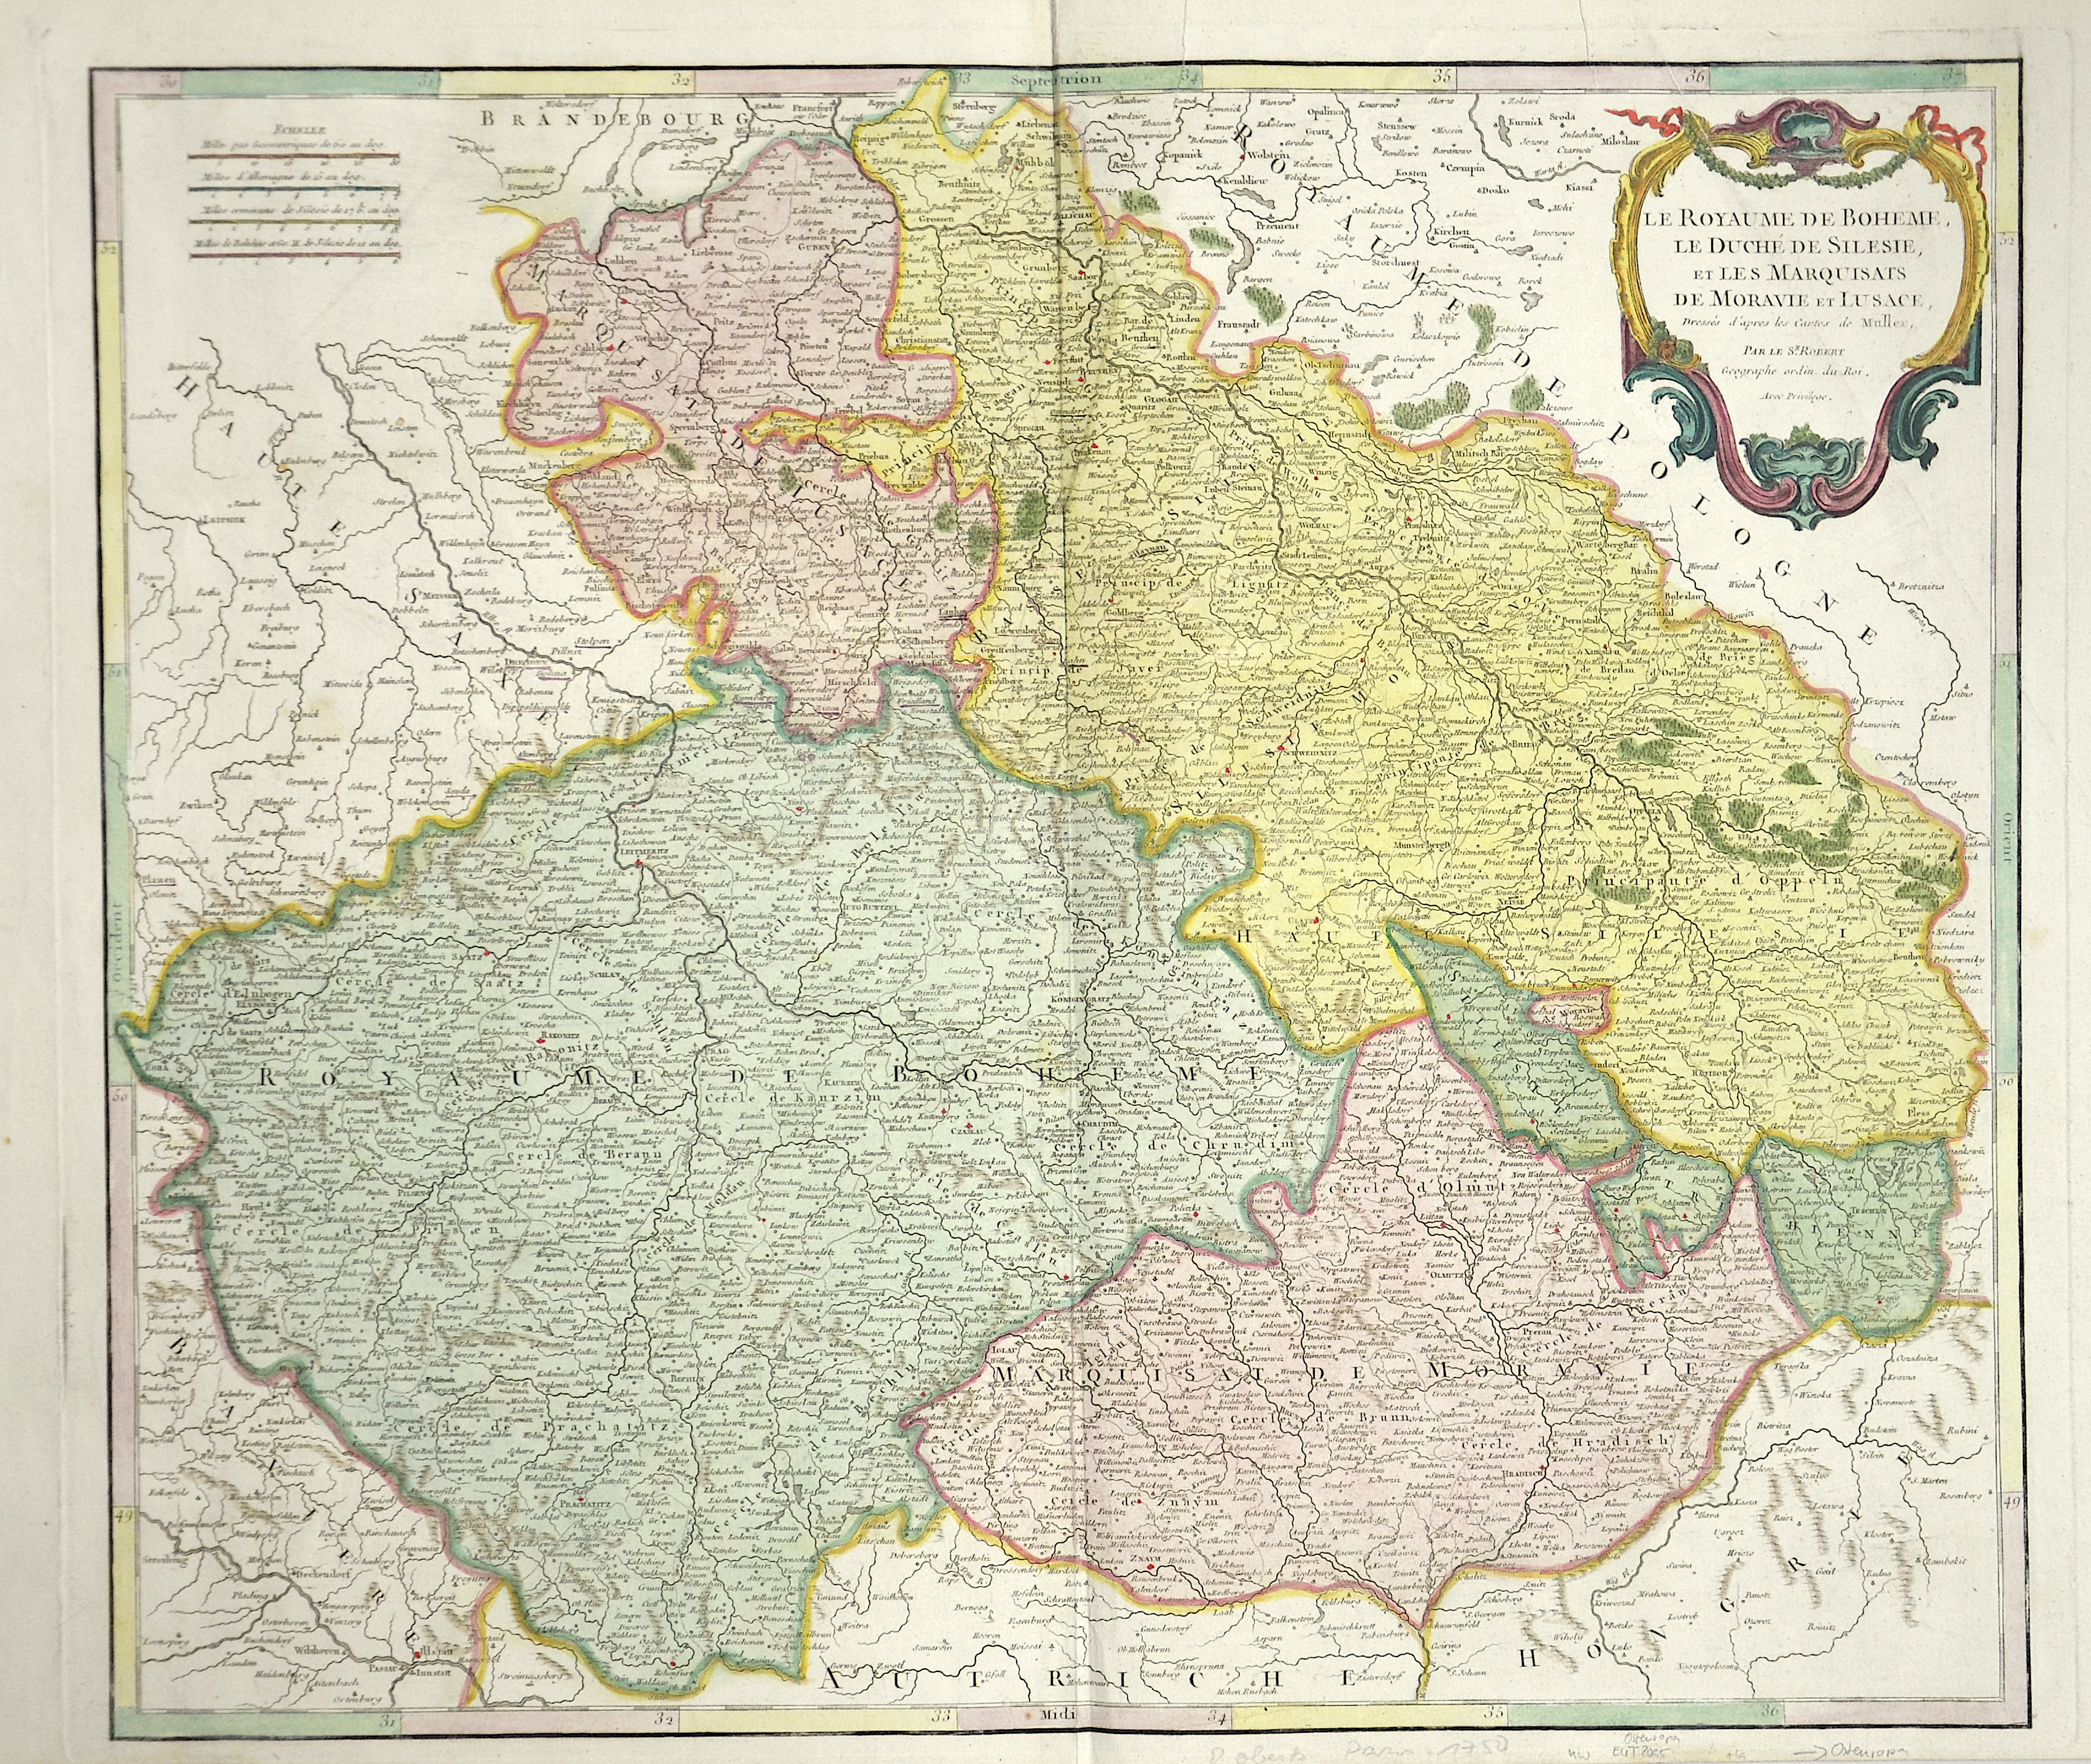 Vaugondy, de  Le Royaume de Boheme, le duche de Silesie, et les Marquisats de Moravie et Lusace